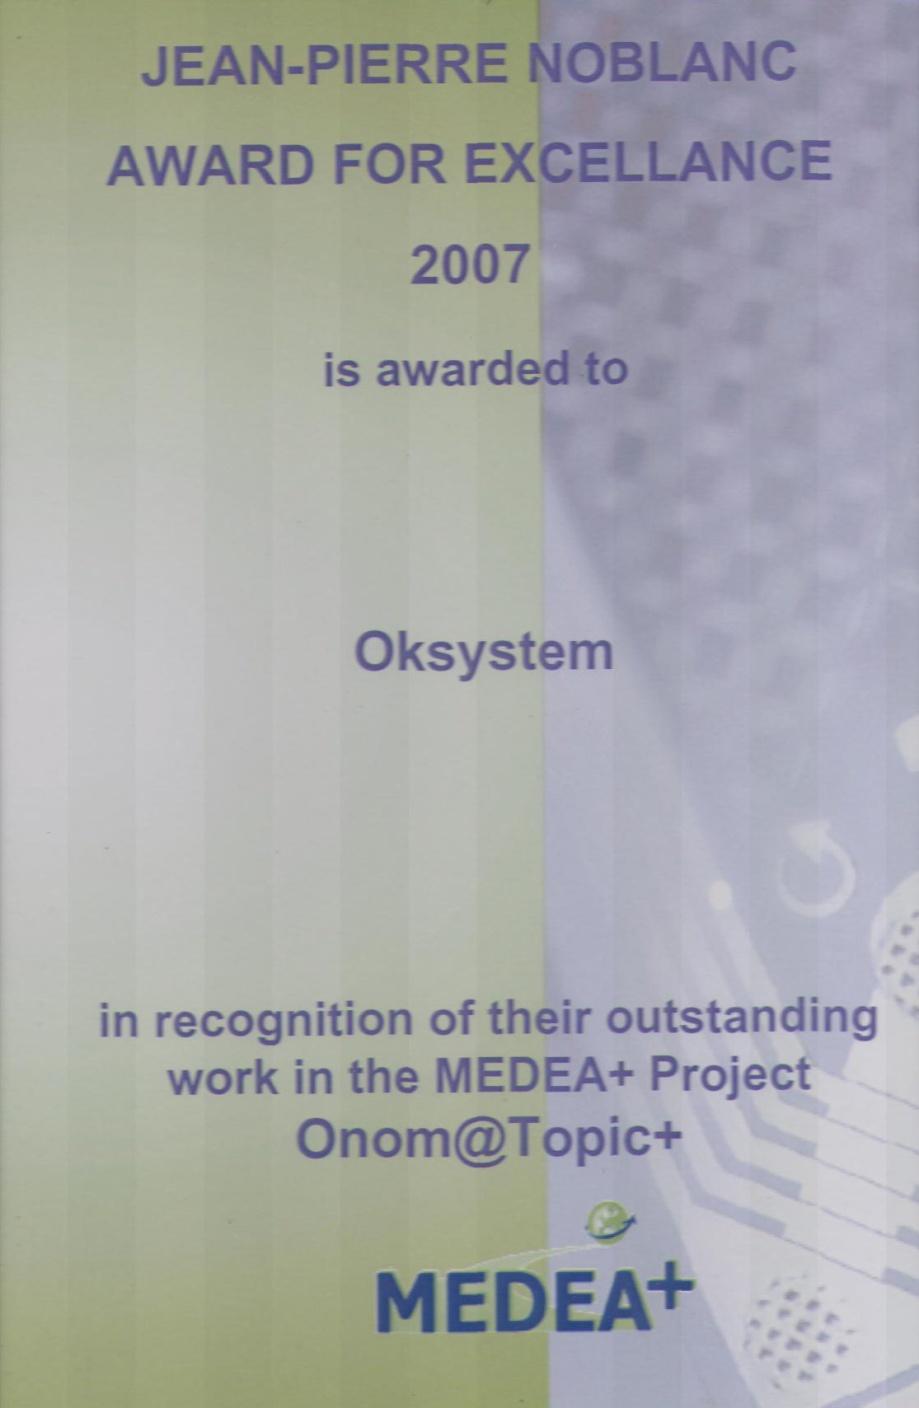 Cena Medea+ Board za nejlepší projekt roku 2007 Výbor MEDEA+ Board udělil během výročního zasedání MEDEA+ Forum 2007 v Budapešti cenu Jean-Pierre Noblanc Award for Excelence za nejlepší projekt roku